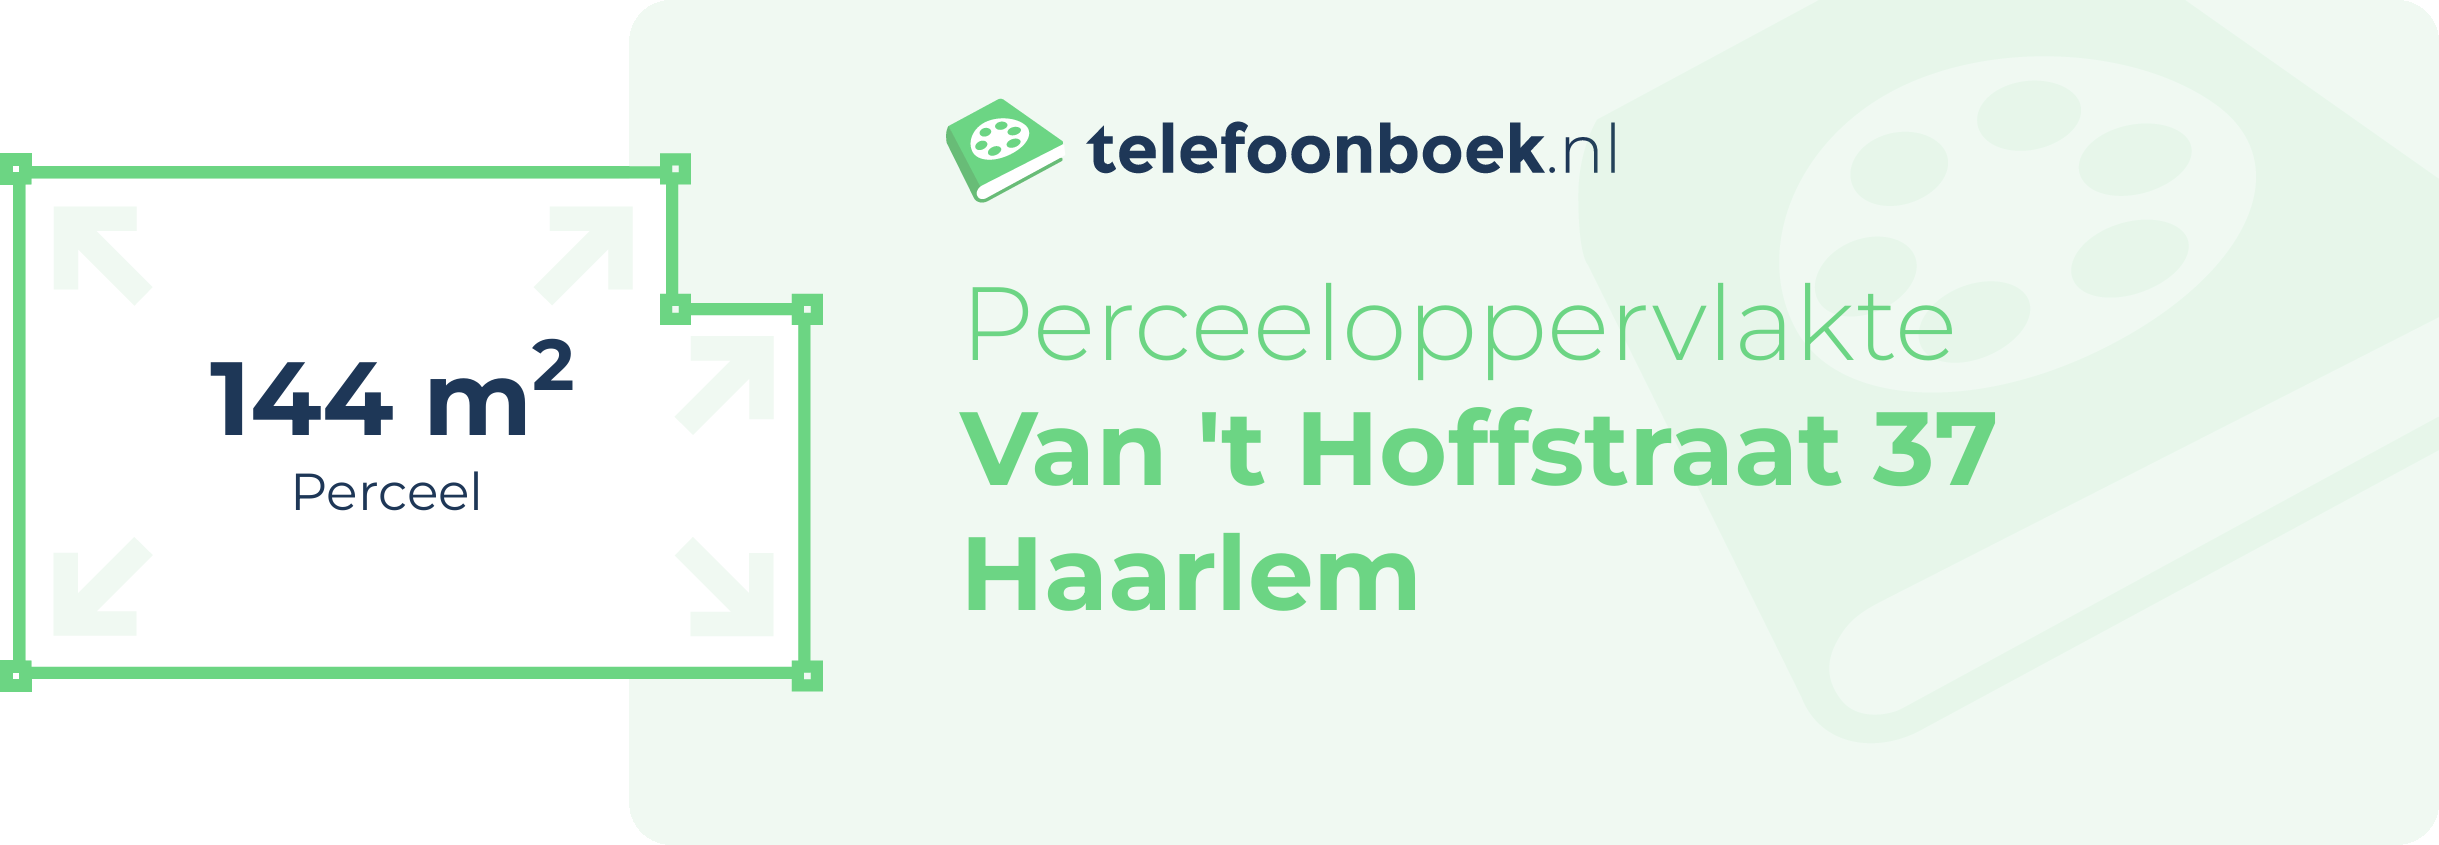 Perceeloppervlakte Van 't Hoffstraat 37 Haarlem